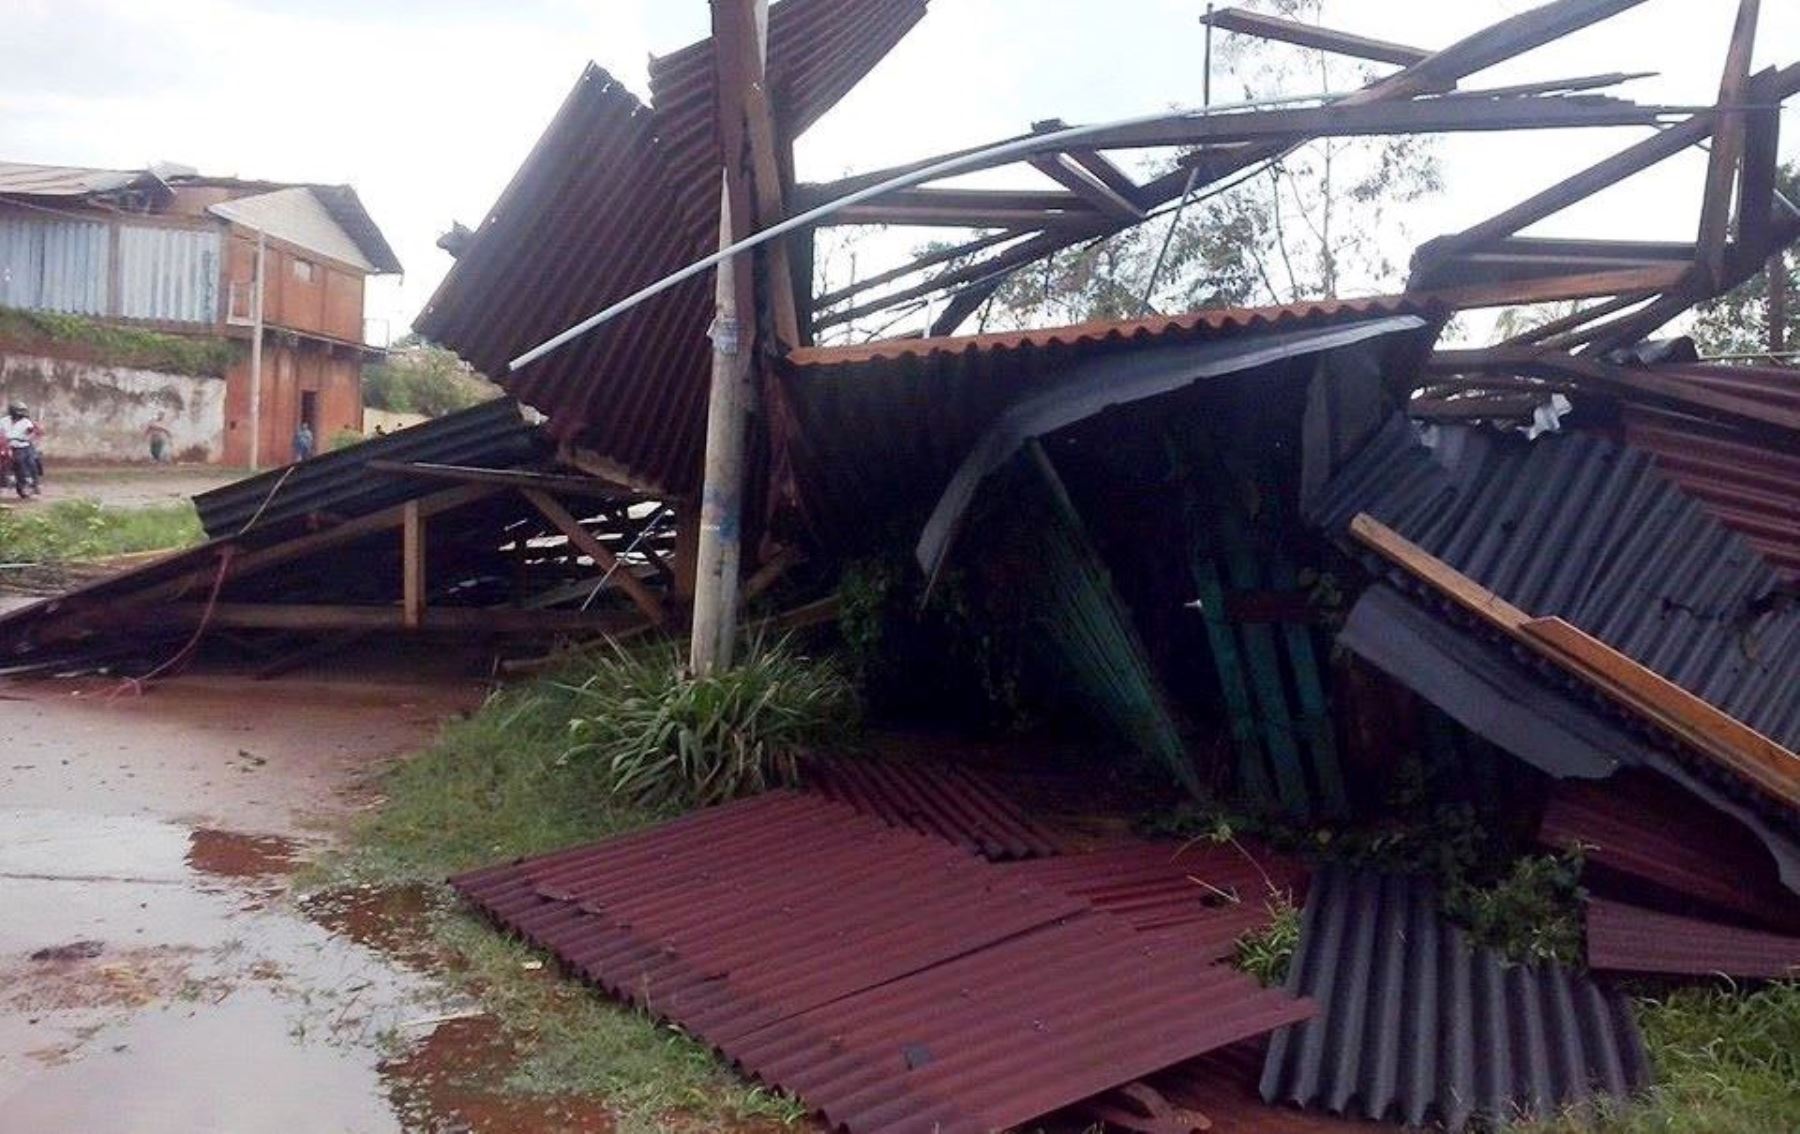 Vientos fuertes causaron daños materiales en distrito de Iberia en Tahuamanu, en Madre de Dios.